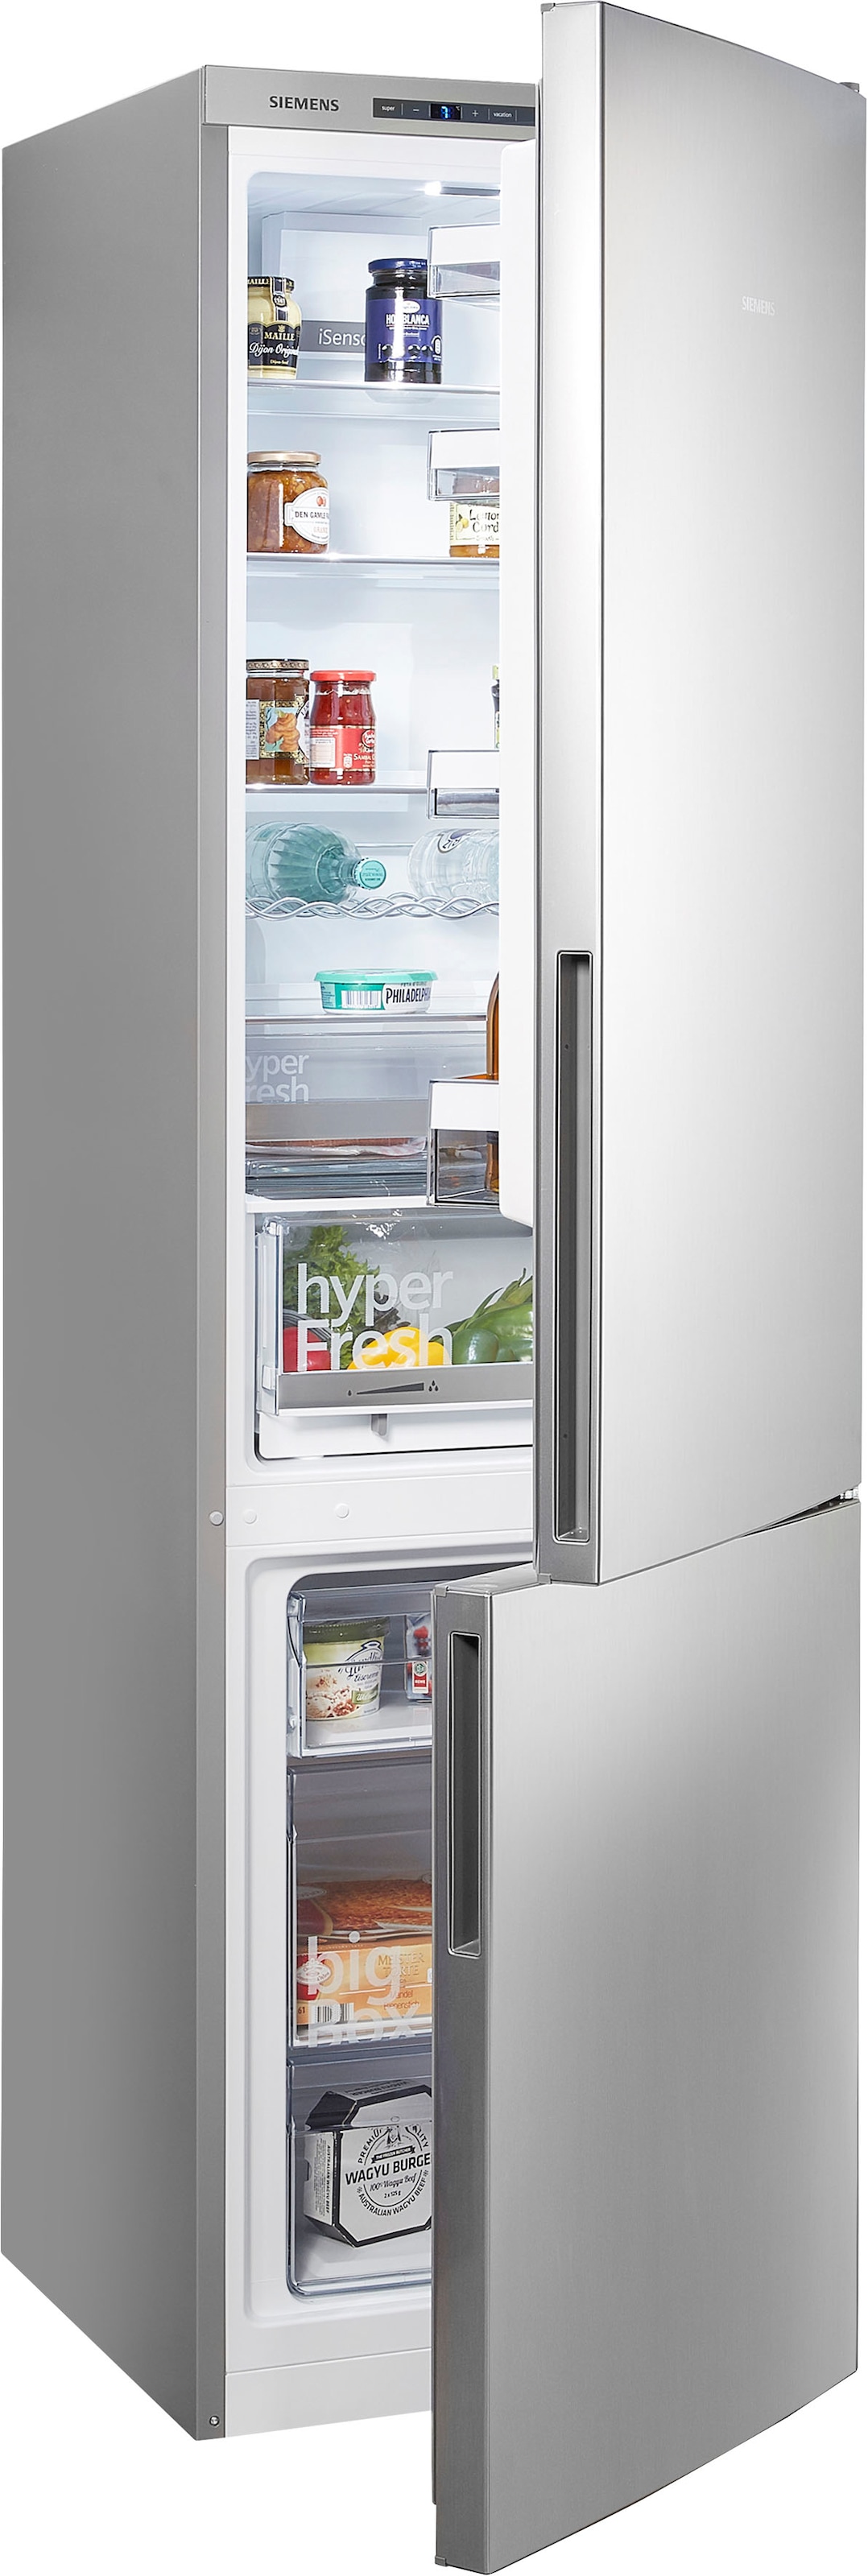 Kühlschränke bei Teilzahlung OTTO mit Siemens flexibler